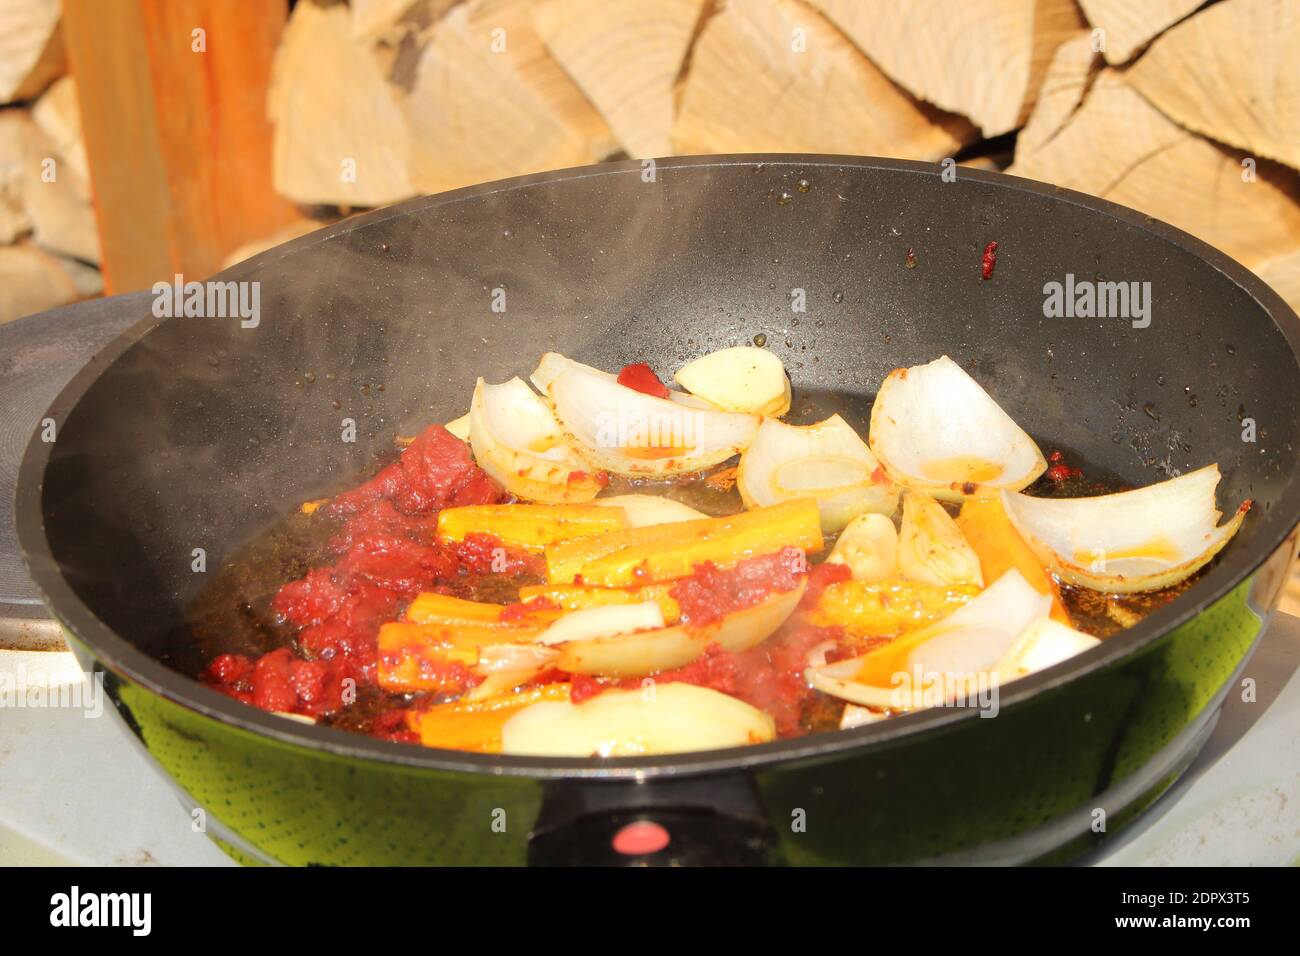 Les oignons et les carottes sont sautés dans une casserole avec de la tomate coller Banque D'Images